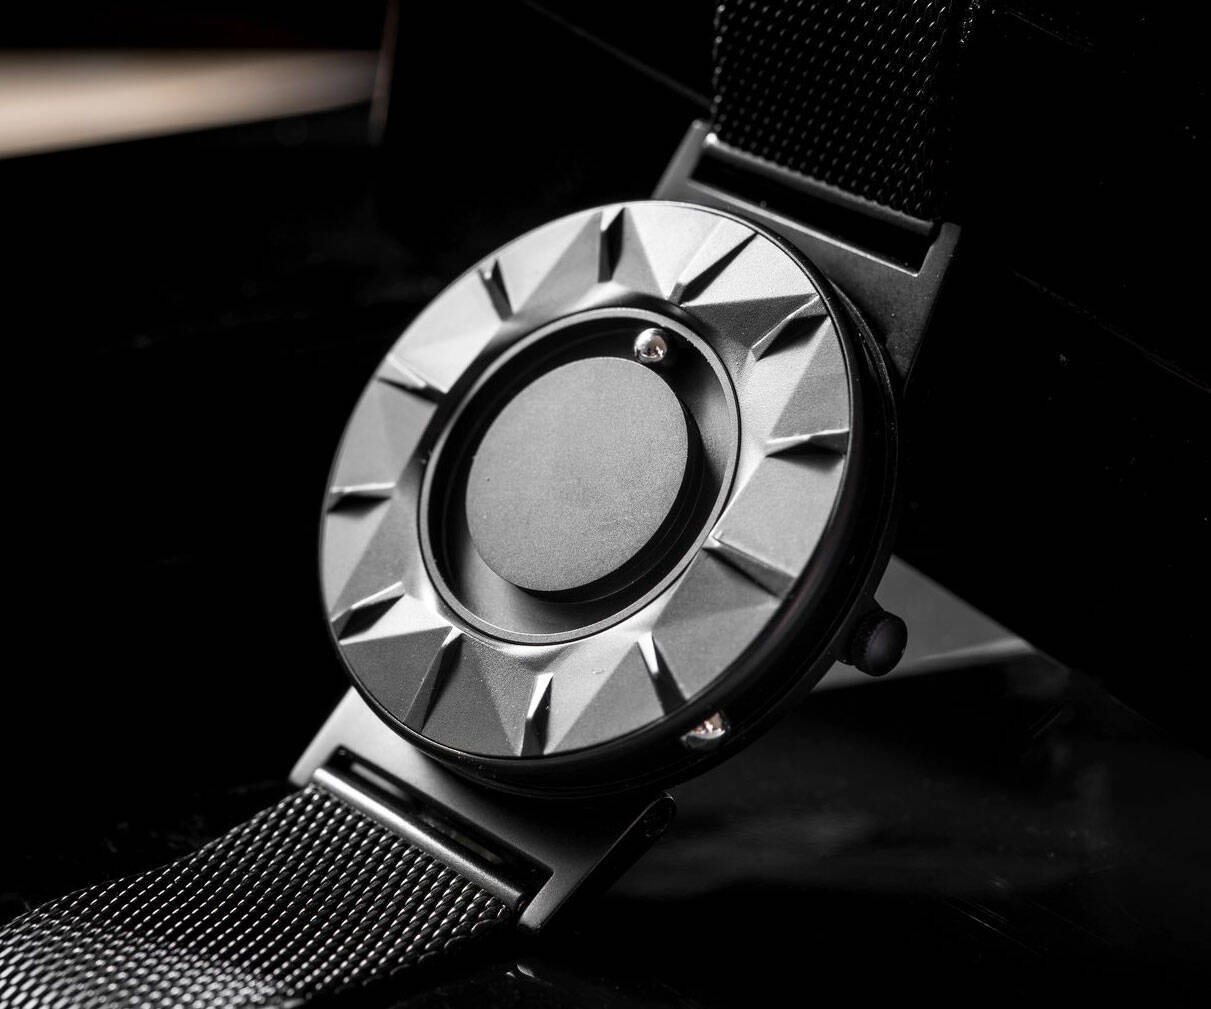 Black Steel Ceramic Quartz Watch - coolthings.us